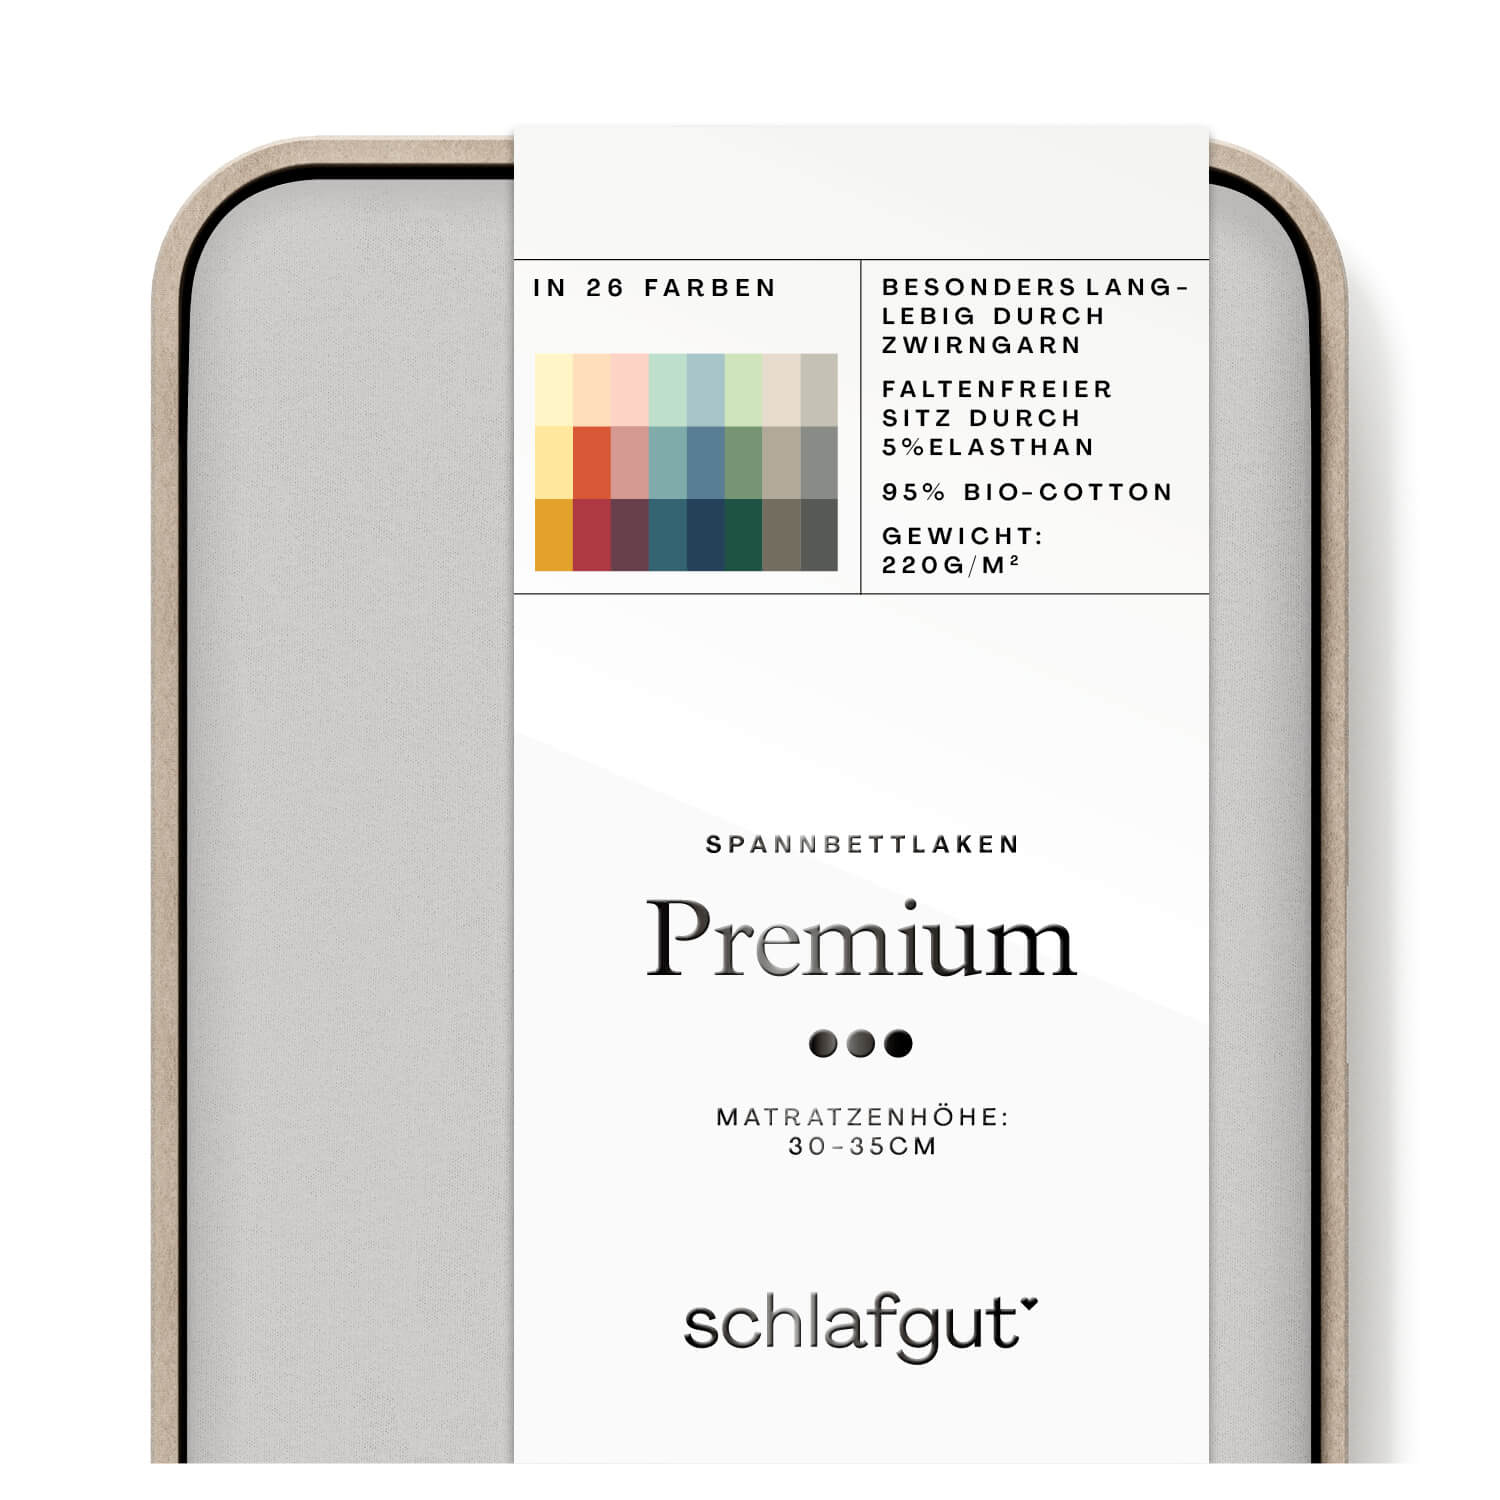 Das Produktbild vom Spannbettlaken der Reihe Premium in Farbe grey light von Schlafgut